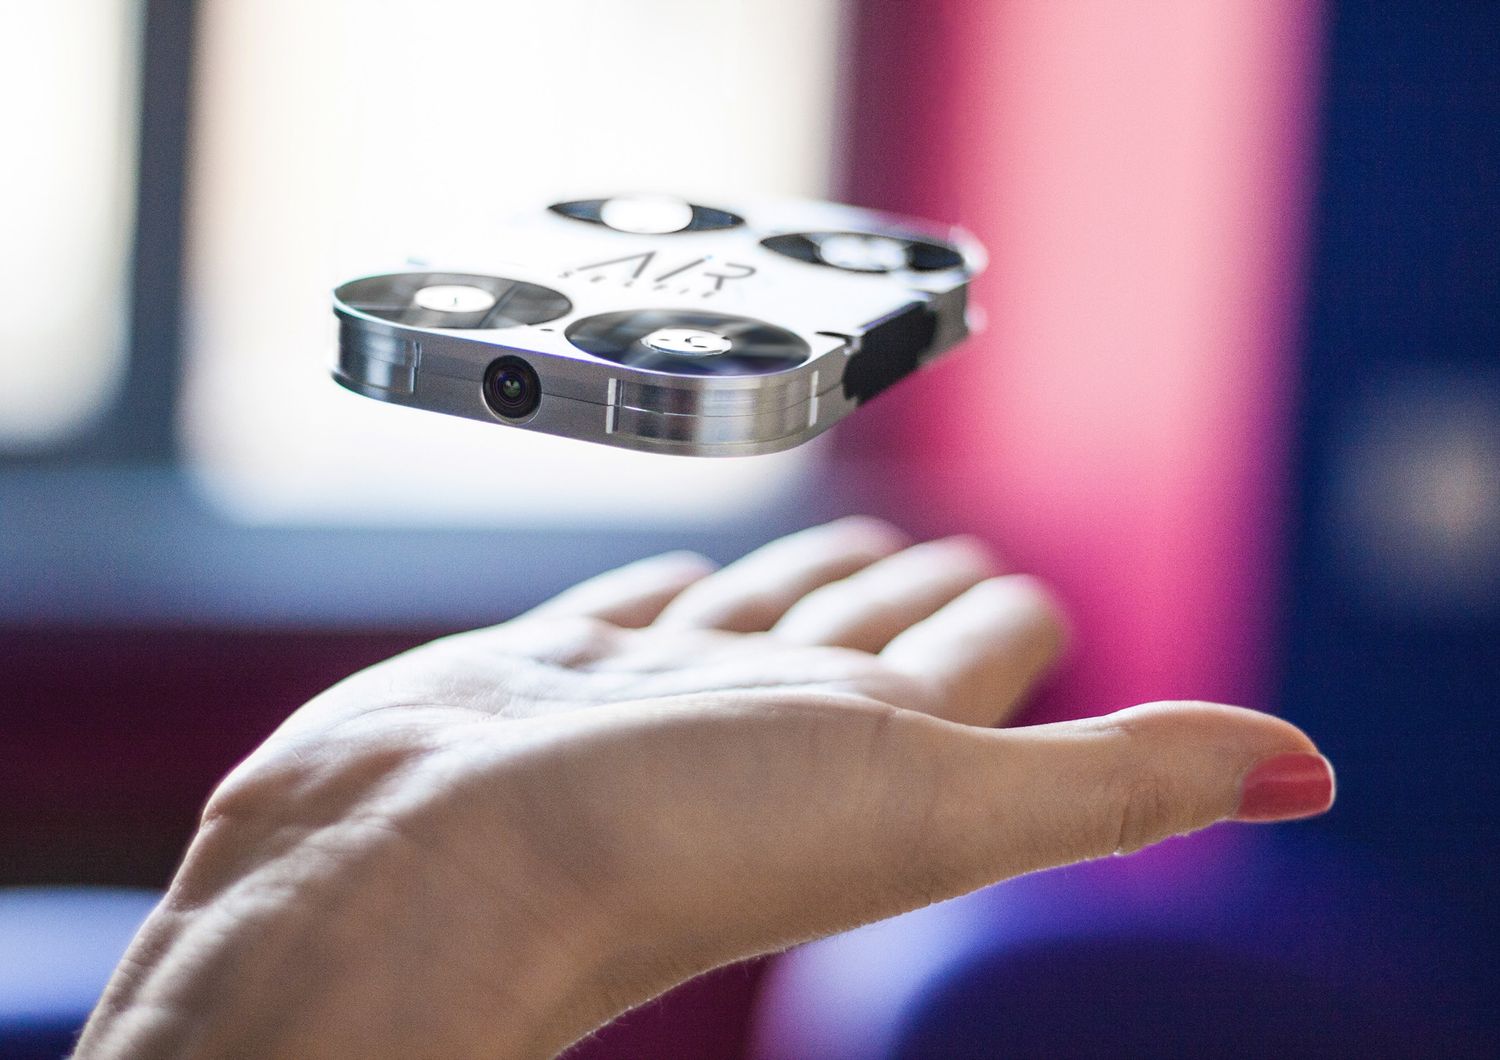 Il selfie estremo vola con un drone (progettato da un italiano)